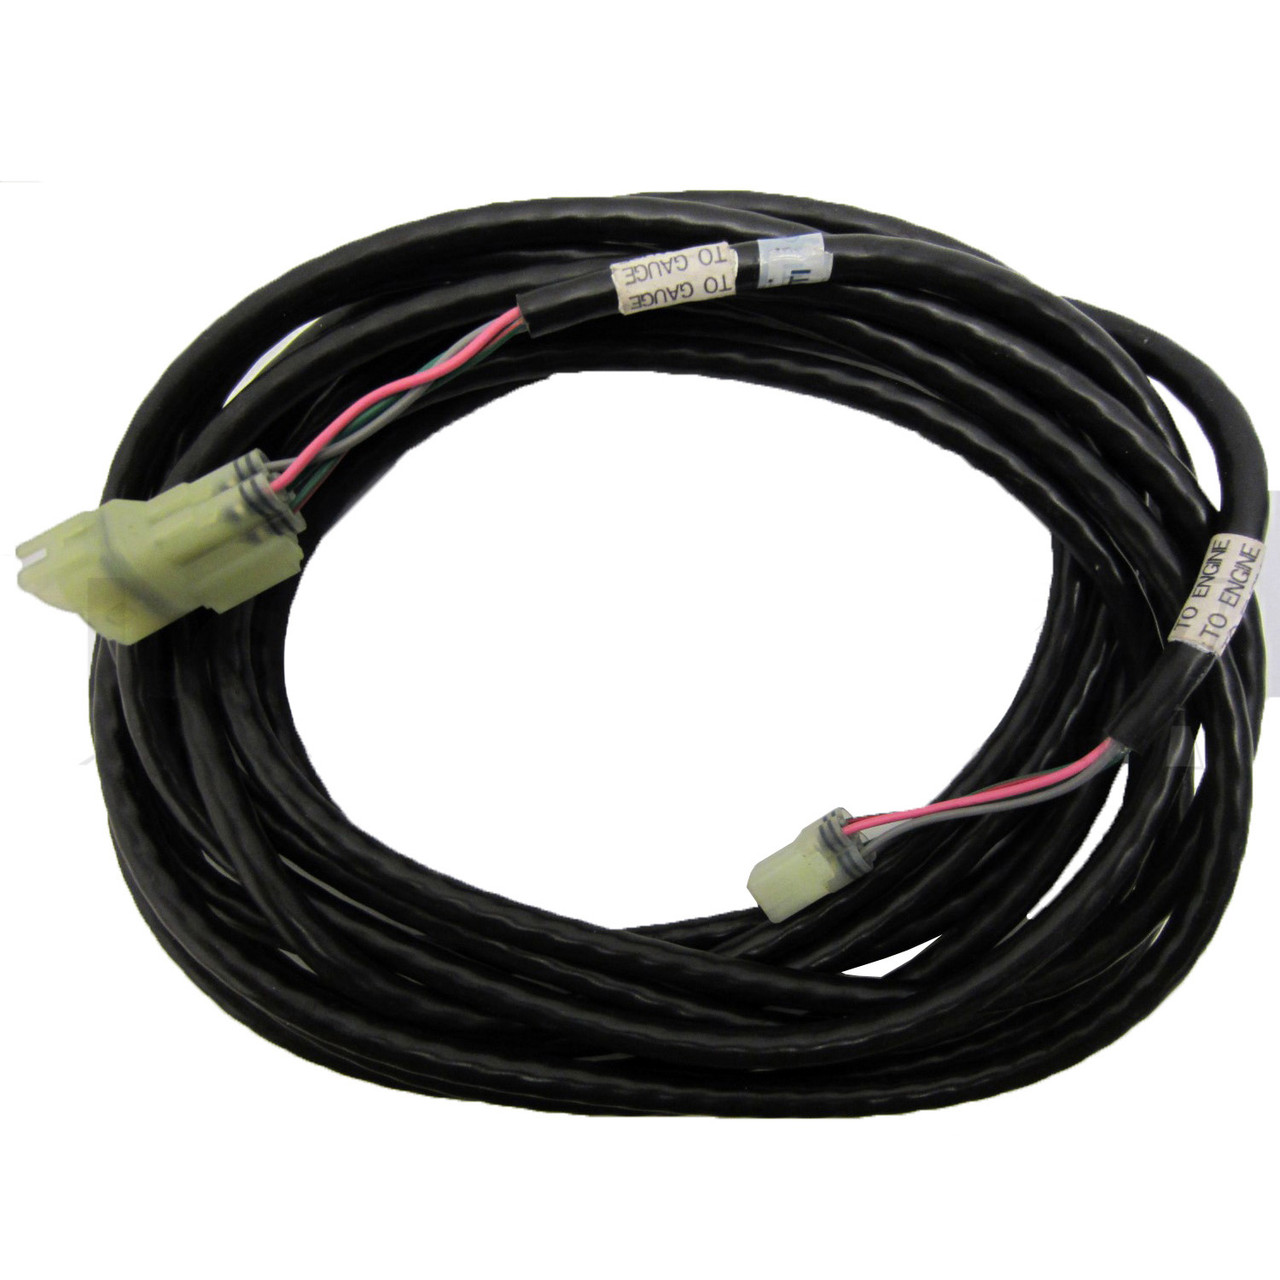 Yamaha New OEM Trim & Tilt Oil Level Sender 20ft Wire Harness 6Y5-83653-10-00